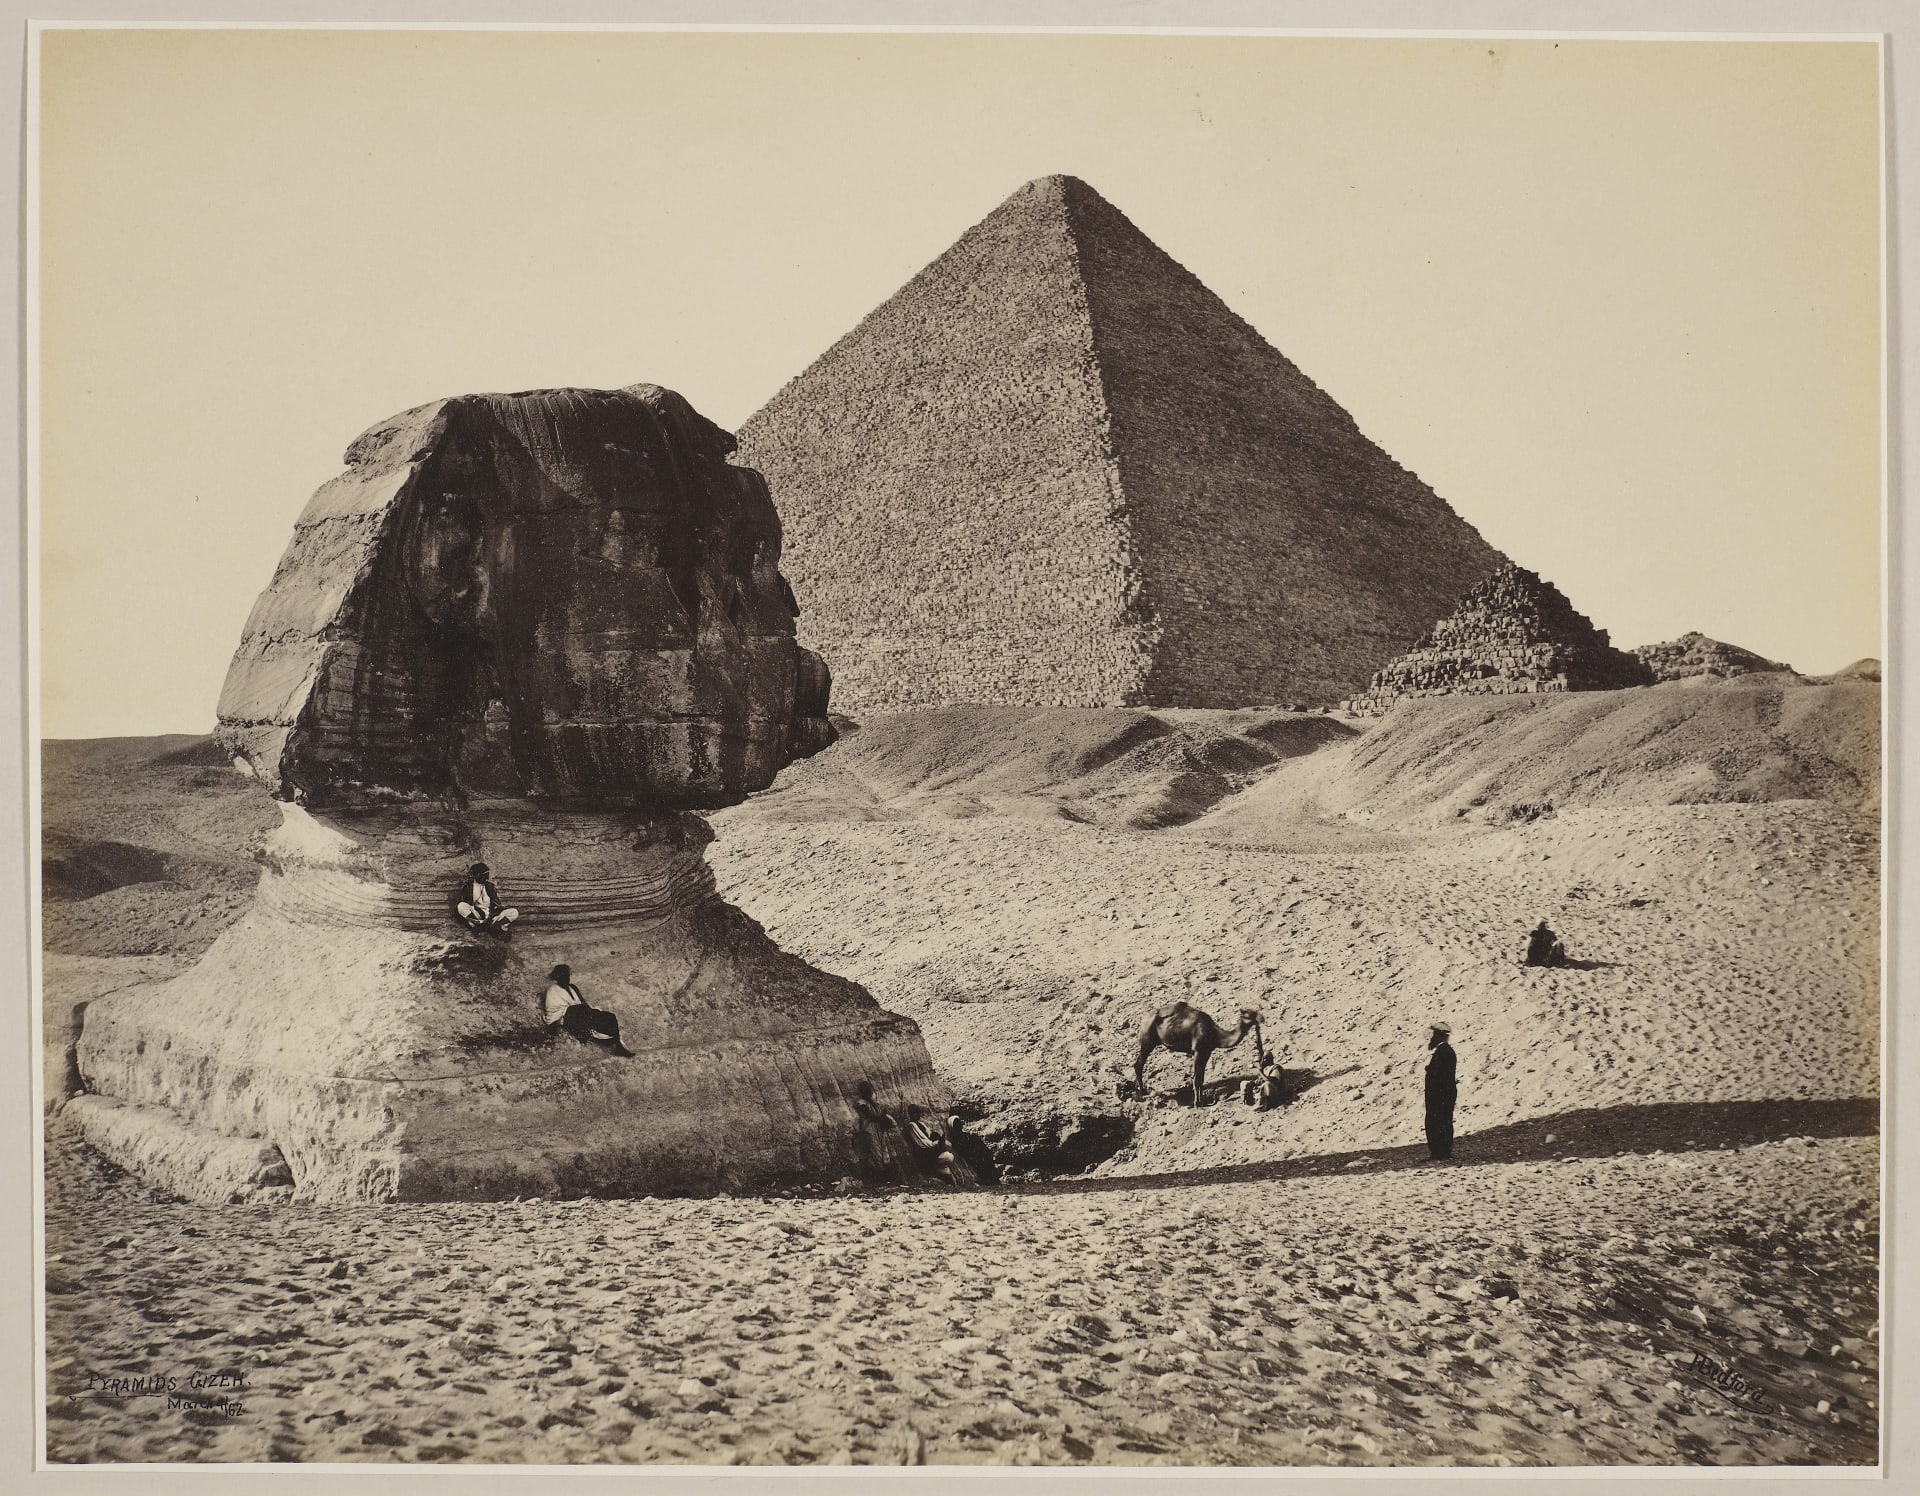 في مصر.. ألق نظرة على أول جولة ملكية تم توثيقها بالصور قبل 150 عام